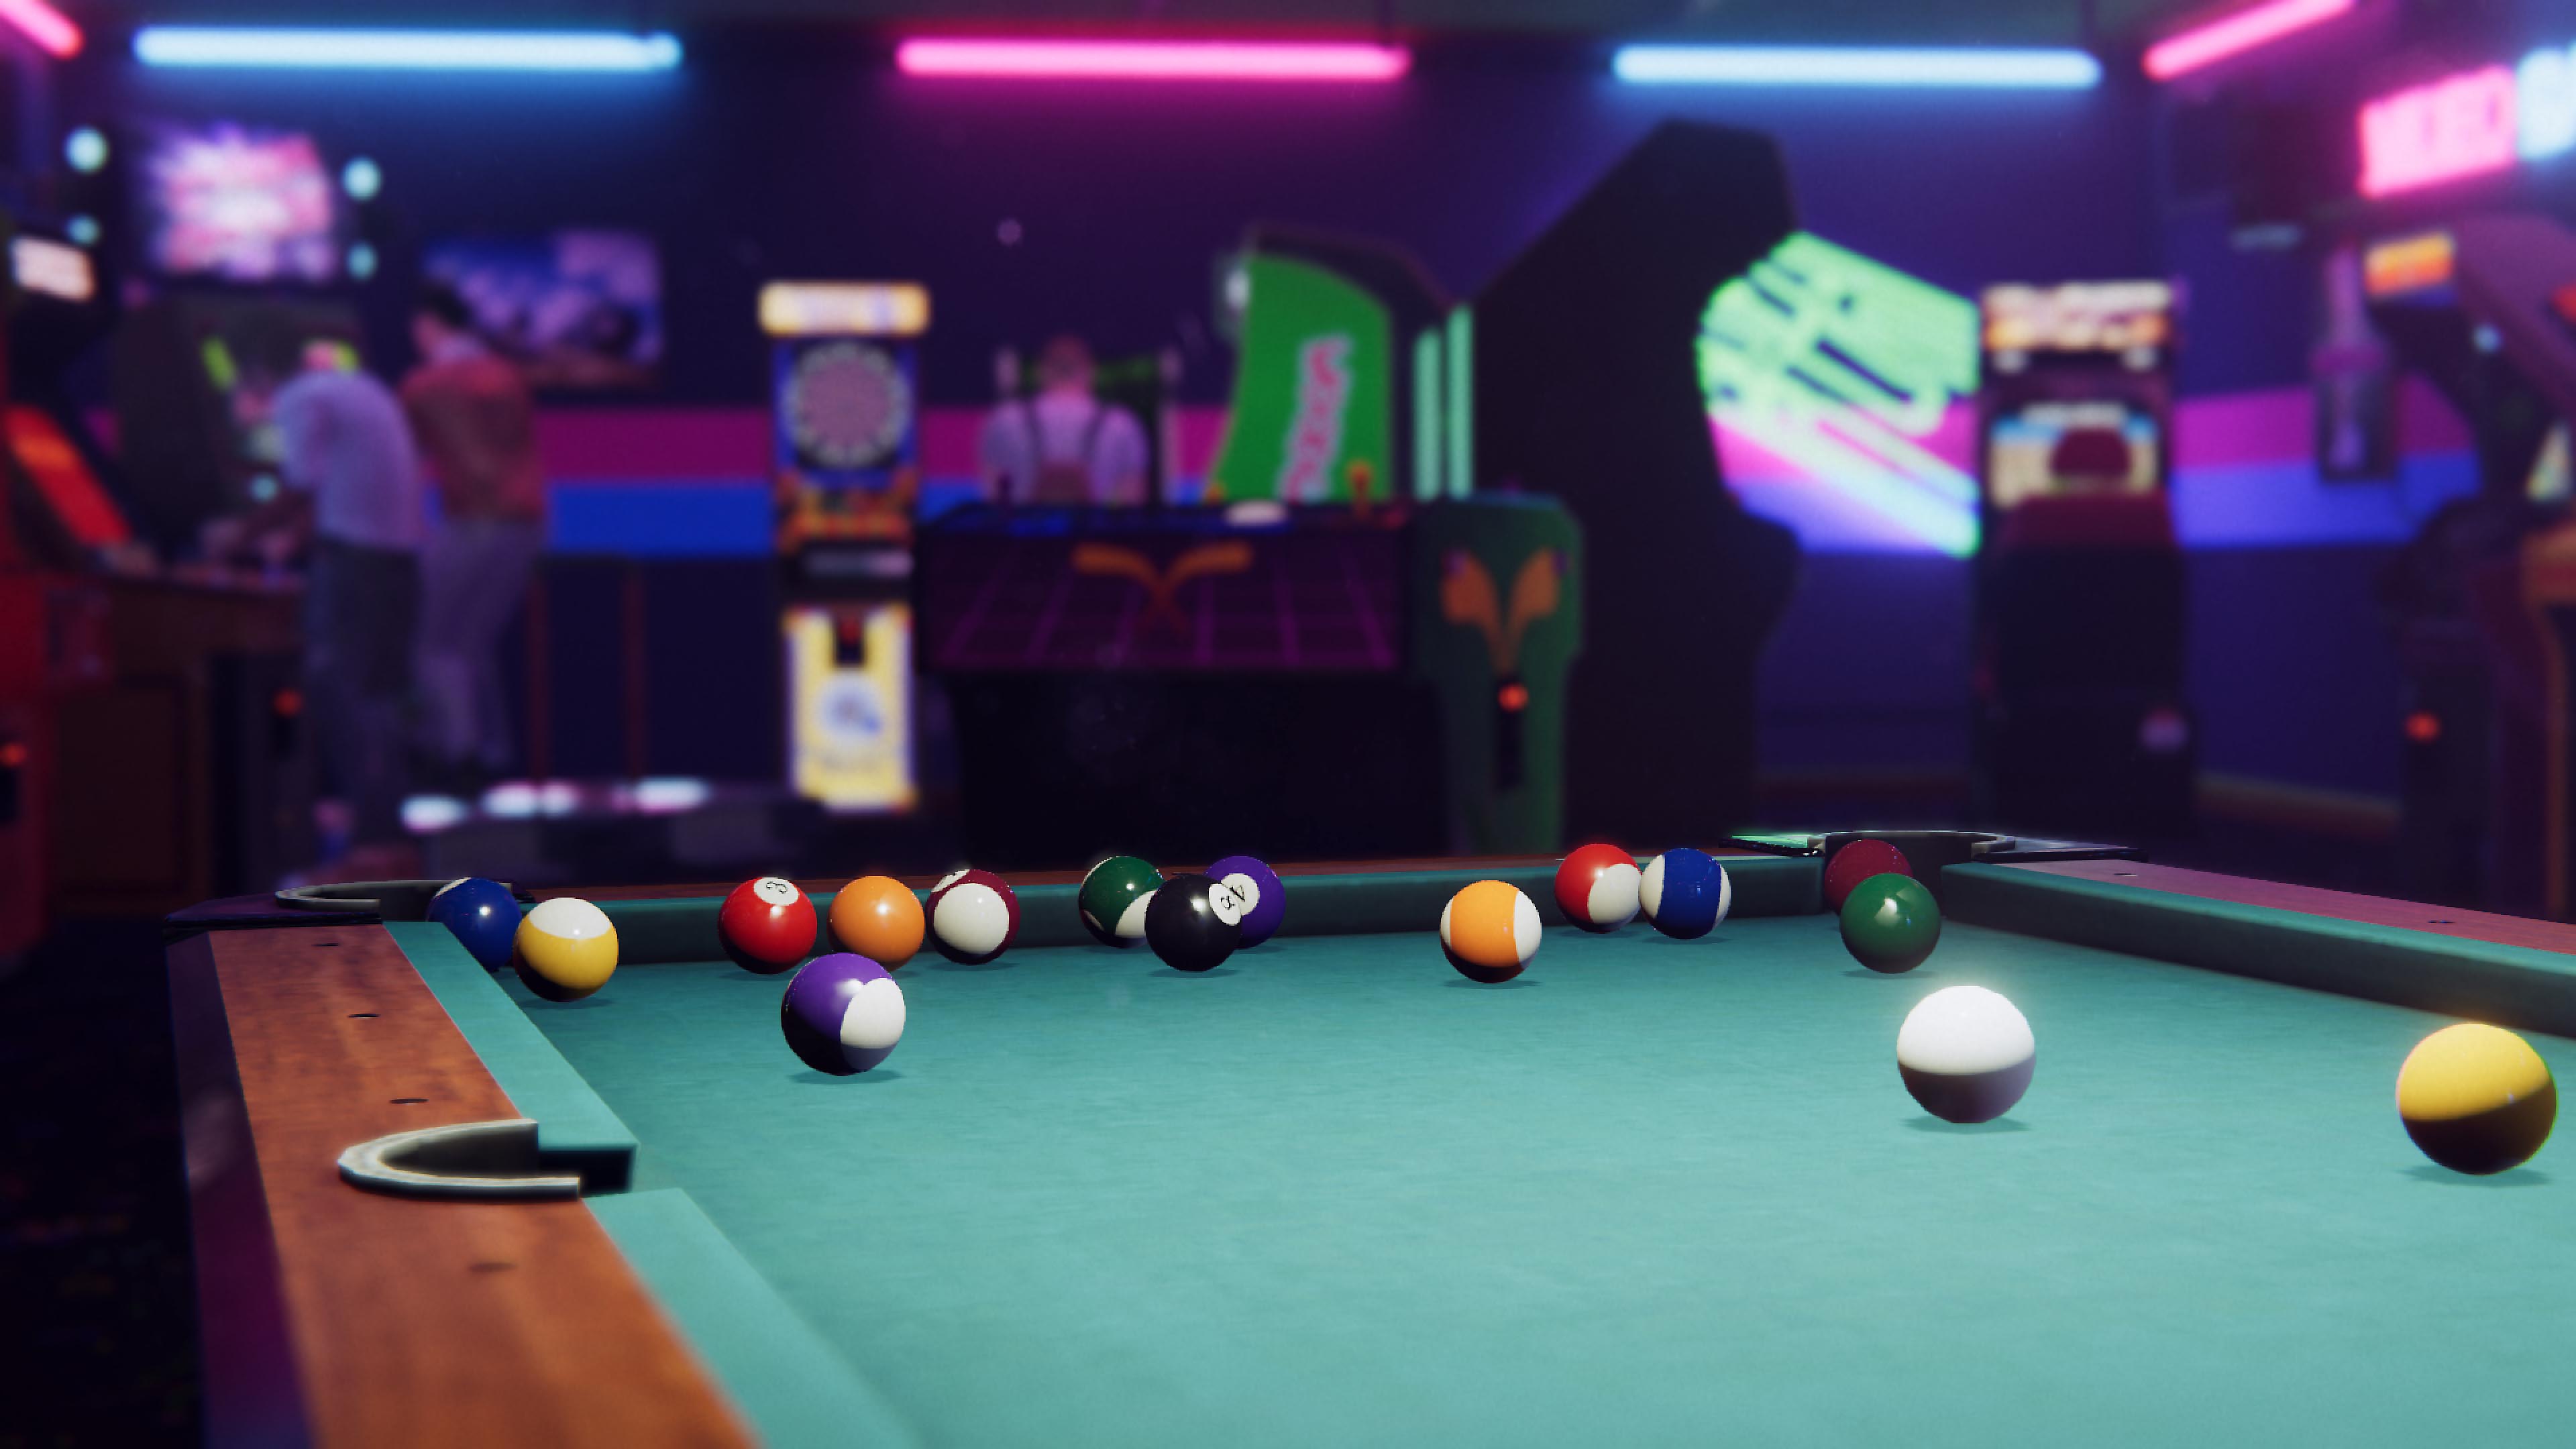 Capture d'écran d'Arcade Paradise montrant une table de pool